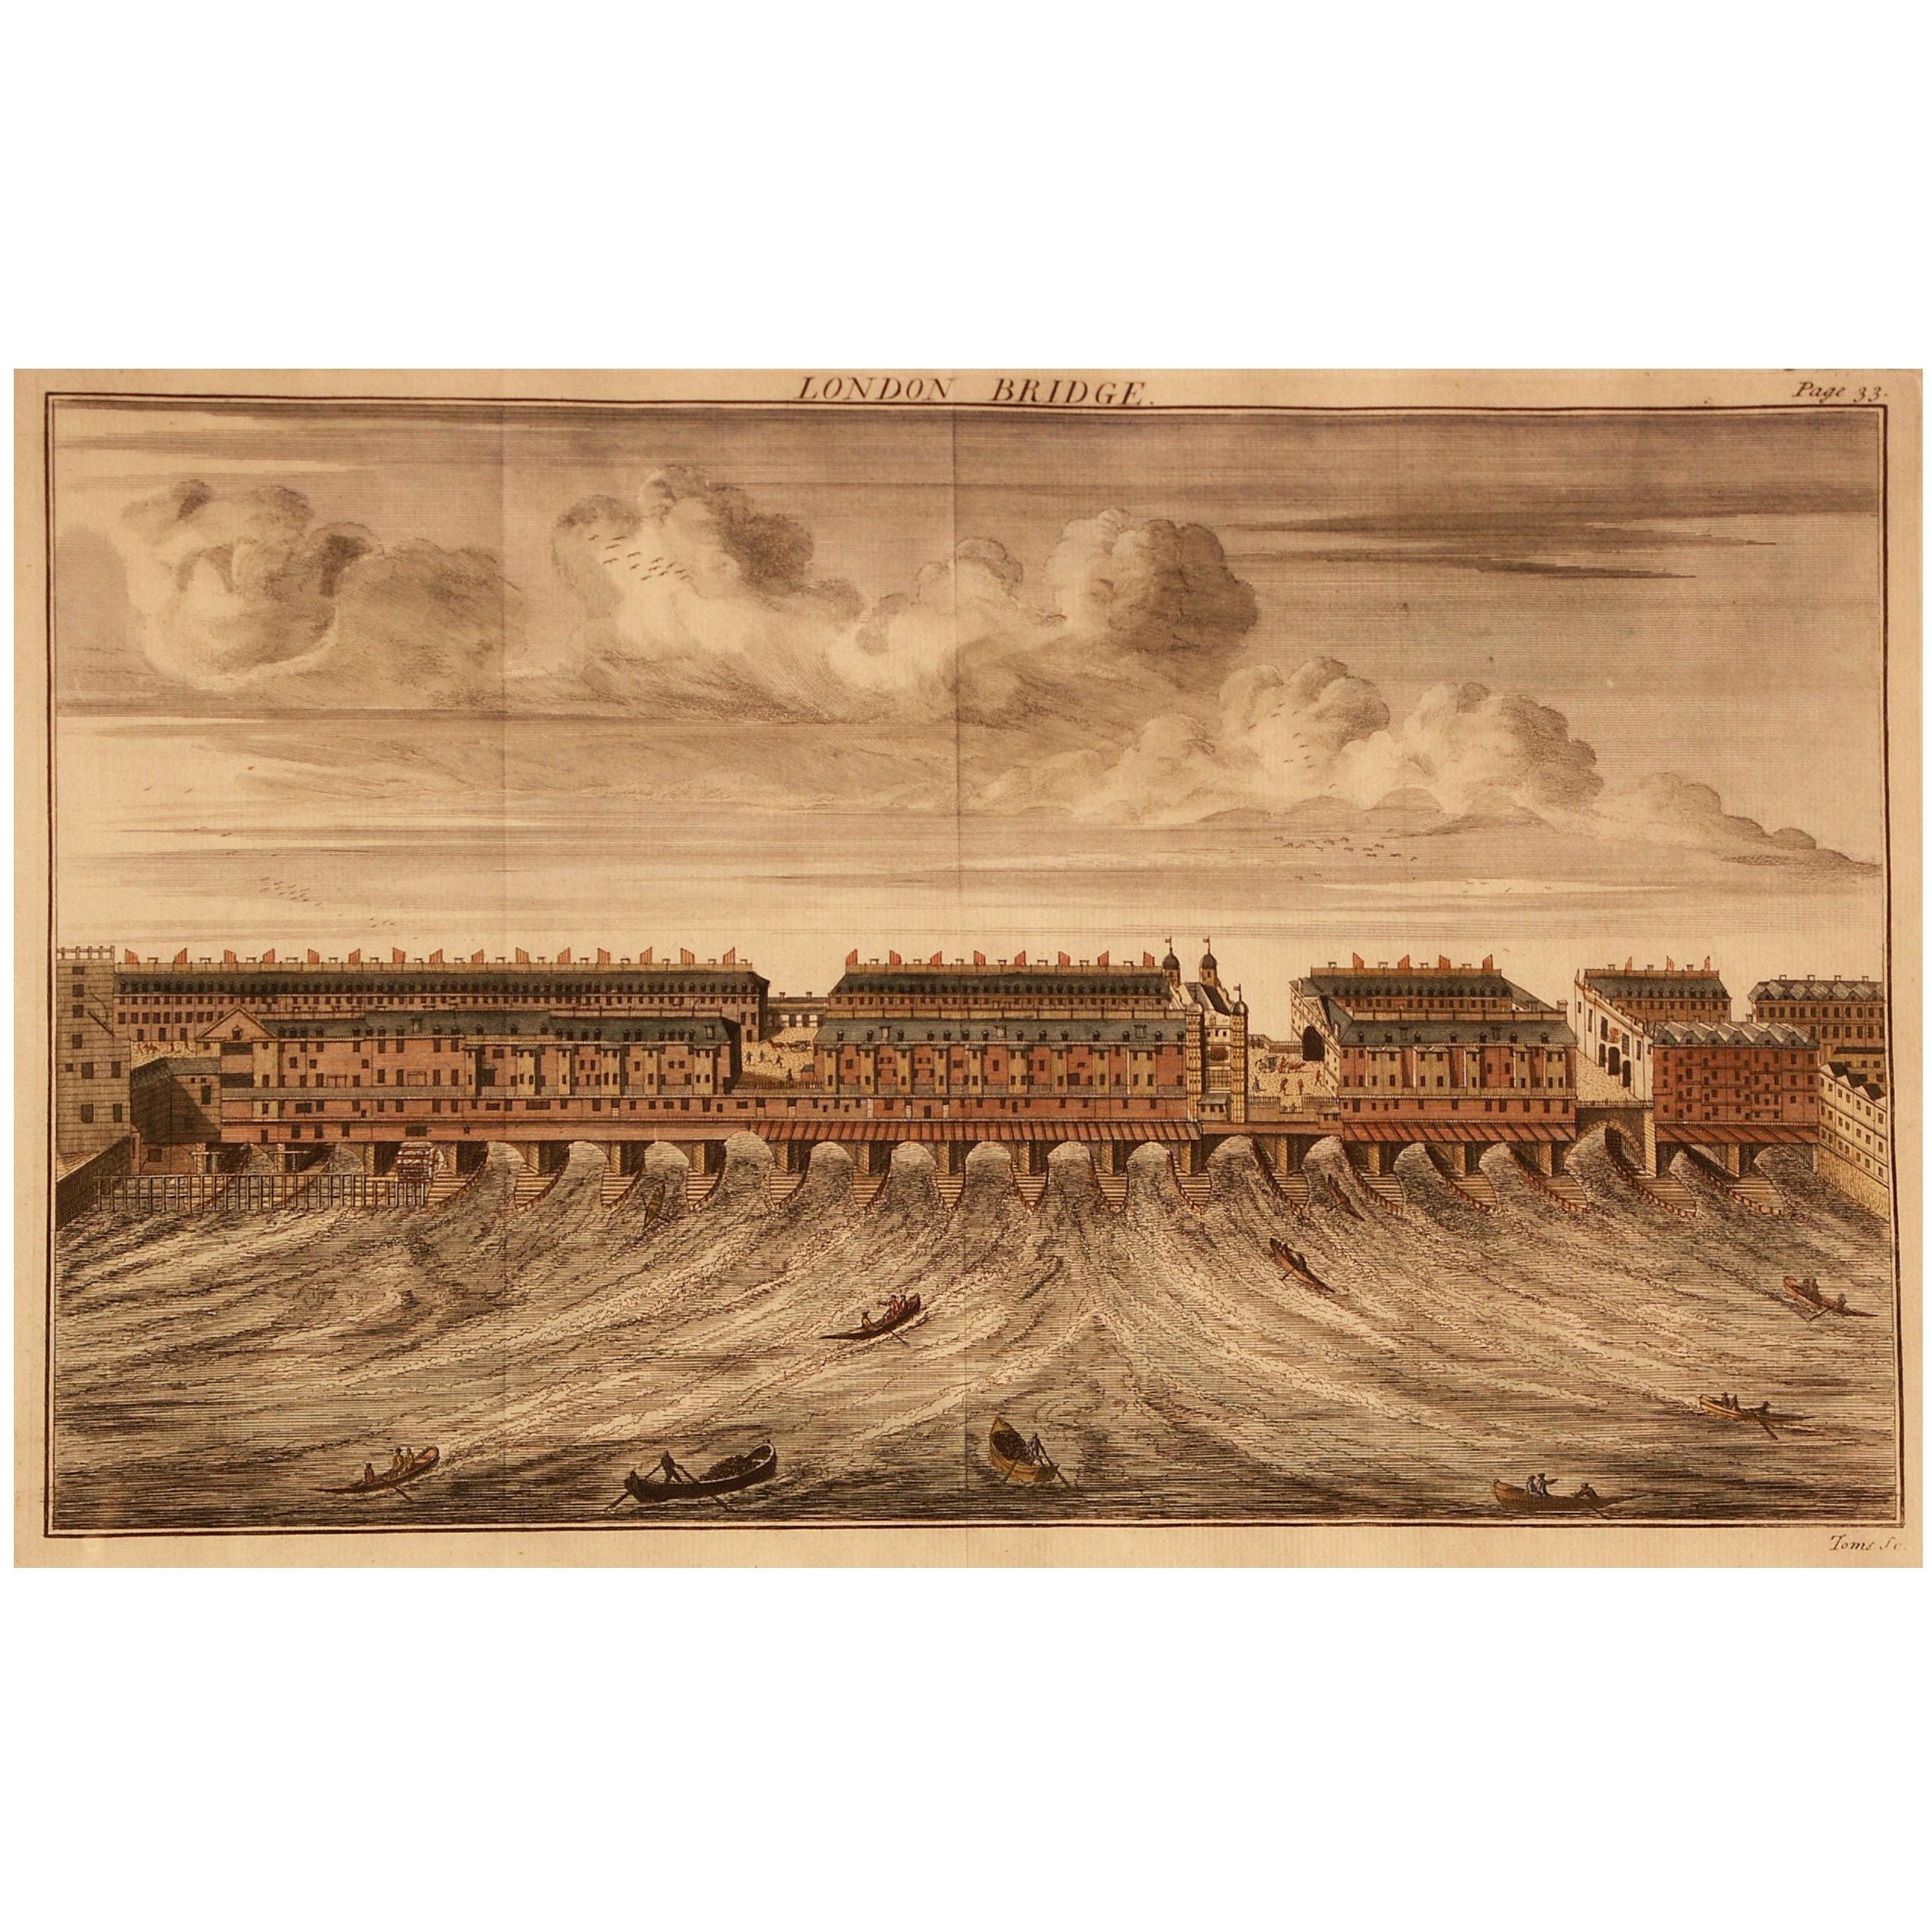 Druck, handkoloriert, Kupferplatte, graviert, London Bridge, William Maitland, 1739